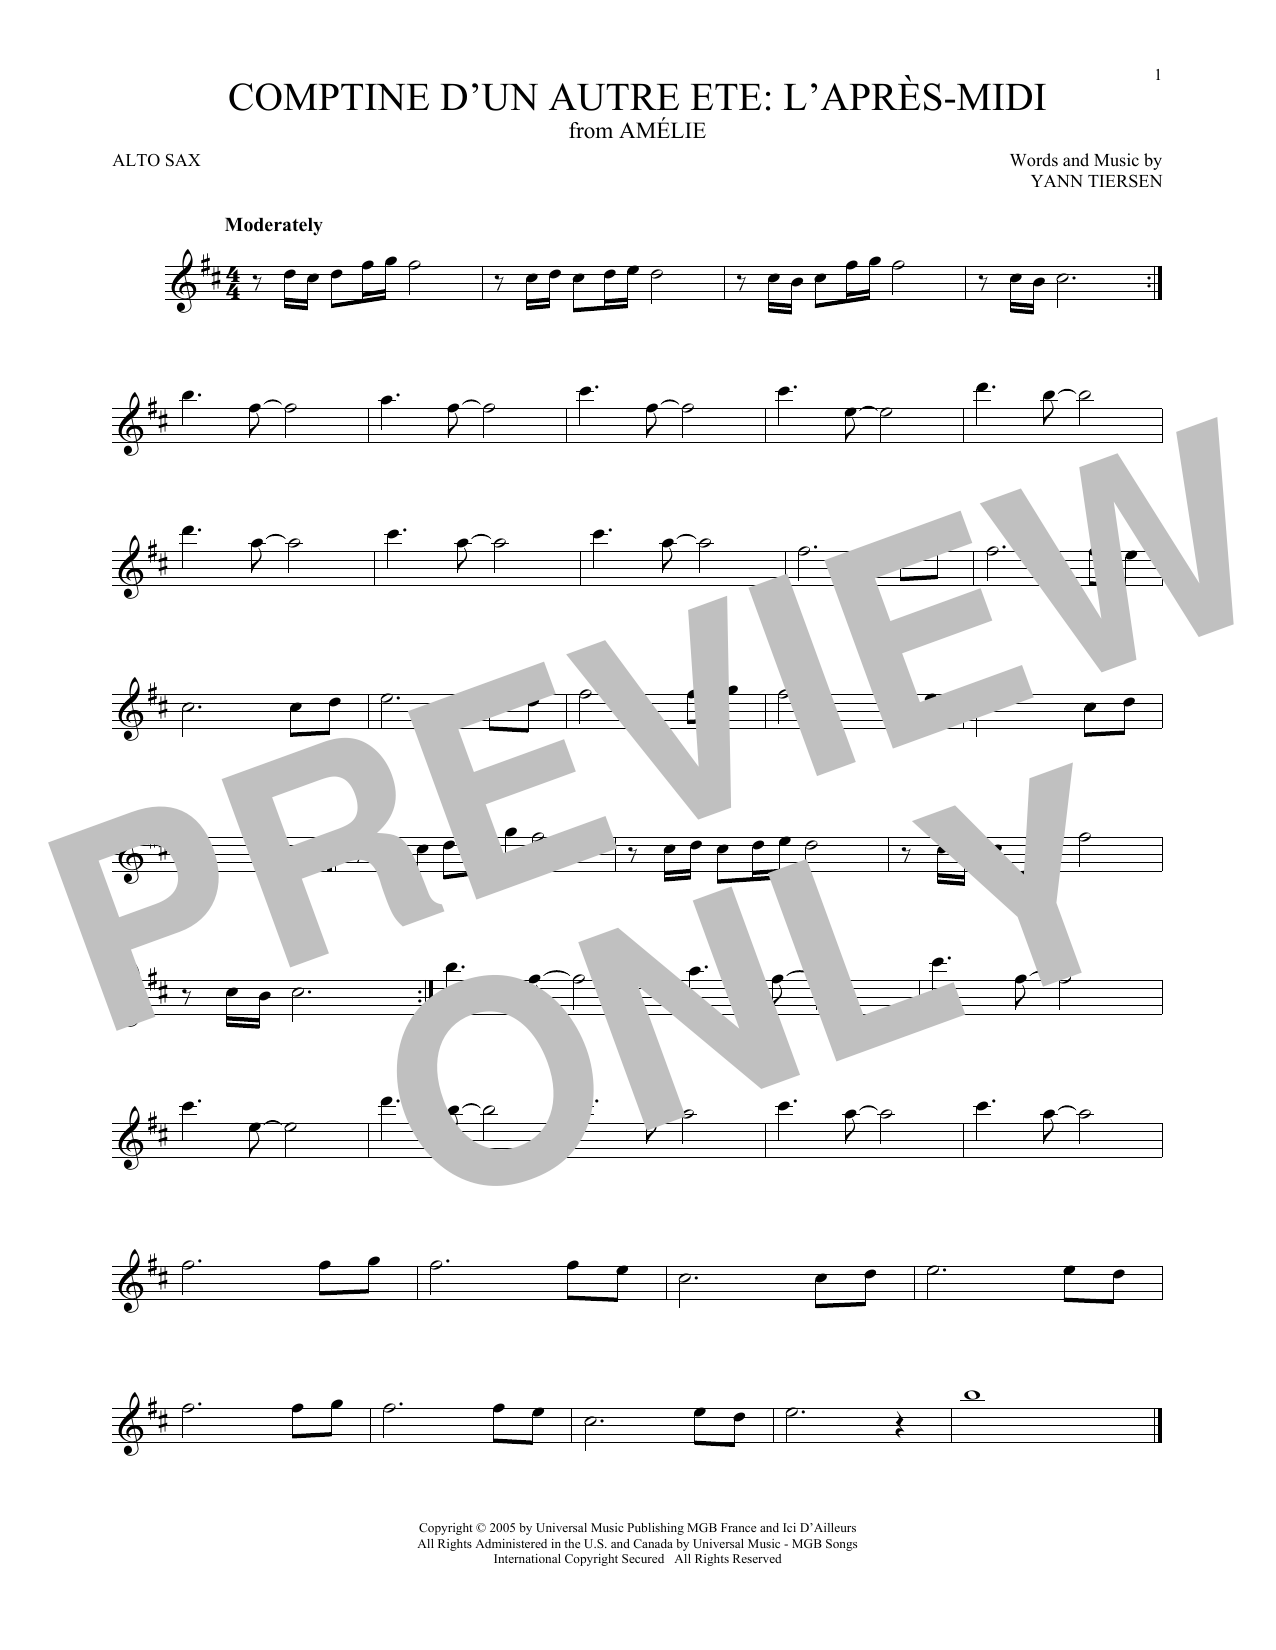 Download Yann Tiersen Comptine d'un autre été: L'après-midi (from Amelie) Sheet Music and learn how to play Trumpet Solo PDF digital score in minutes